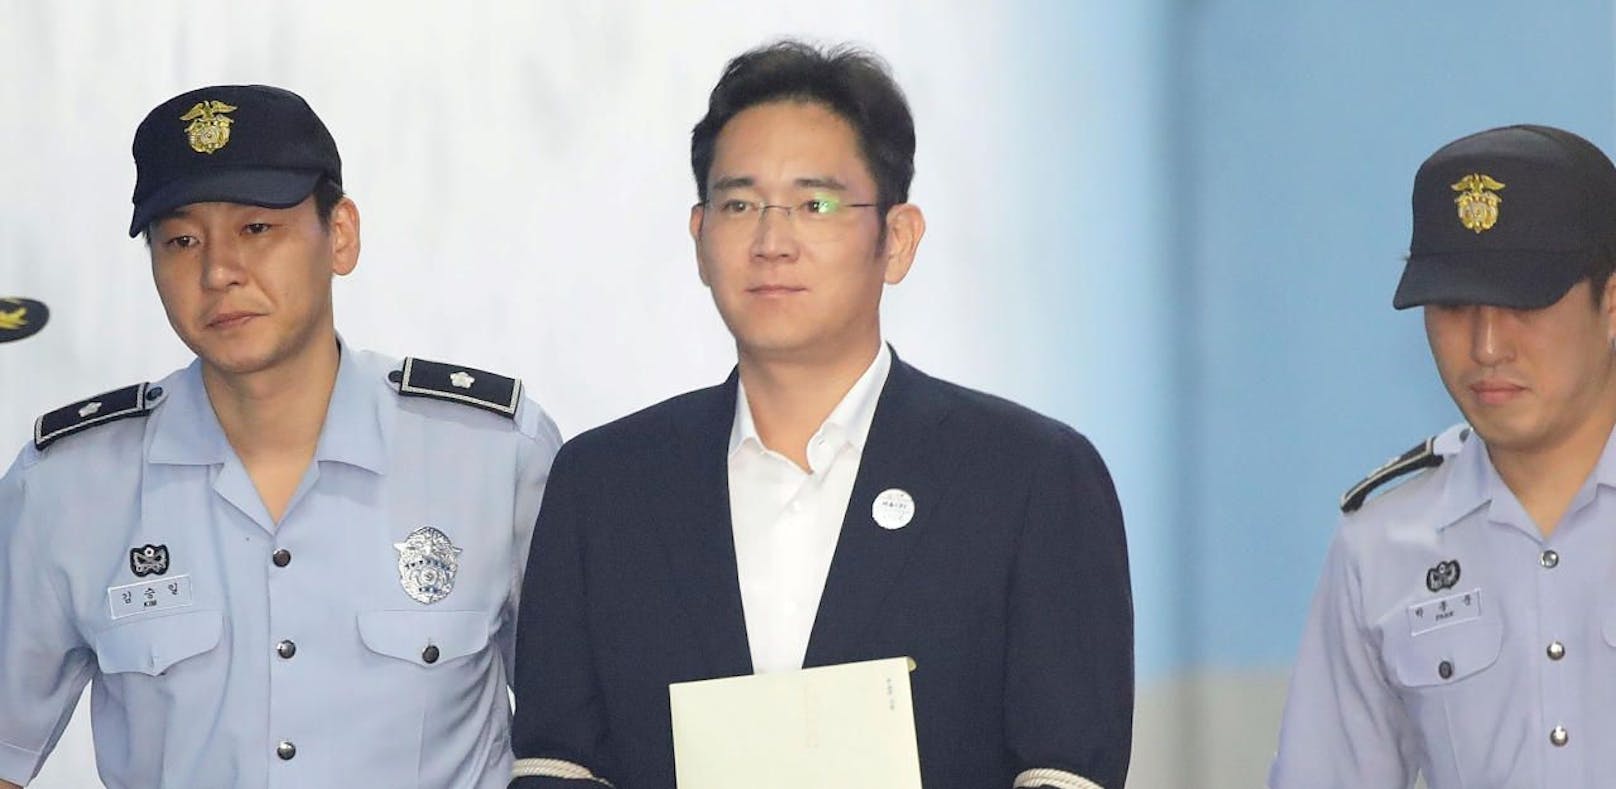 Samsung-Erbe zu fünf Jahren Haft verurteilt